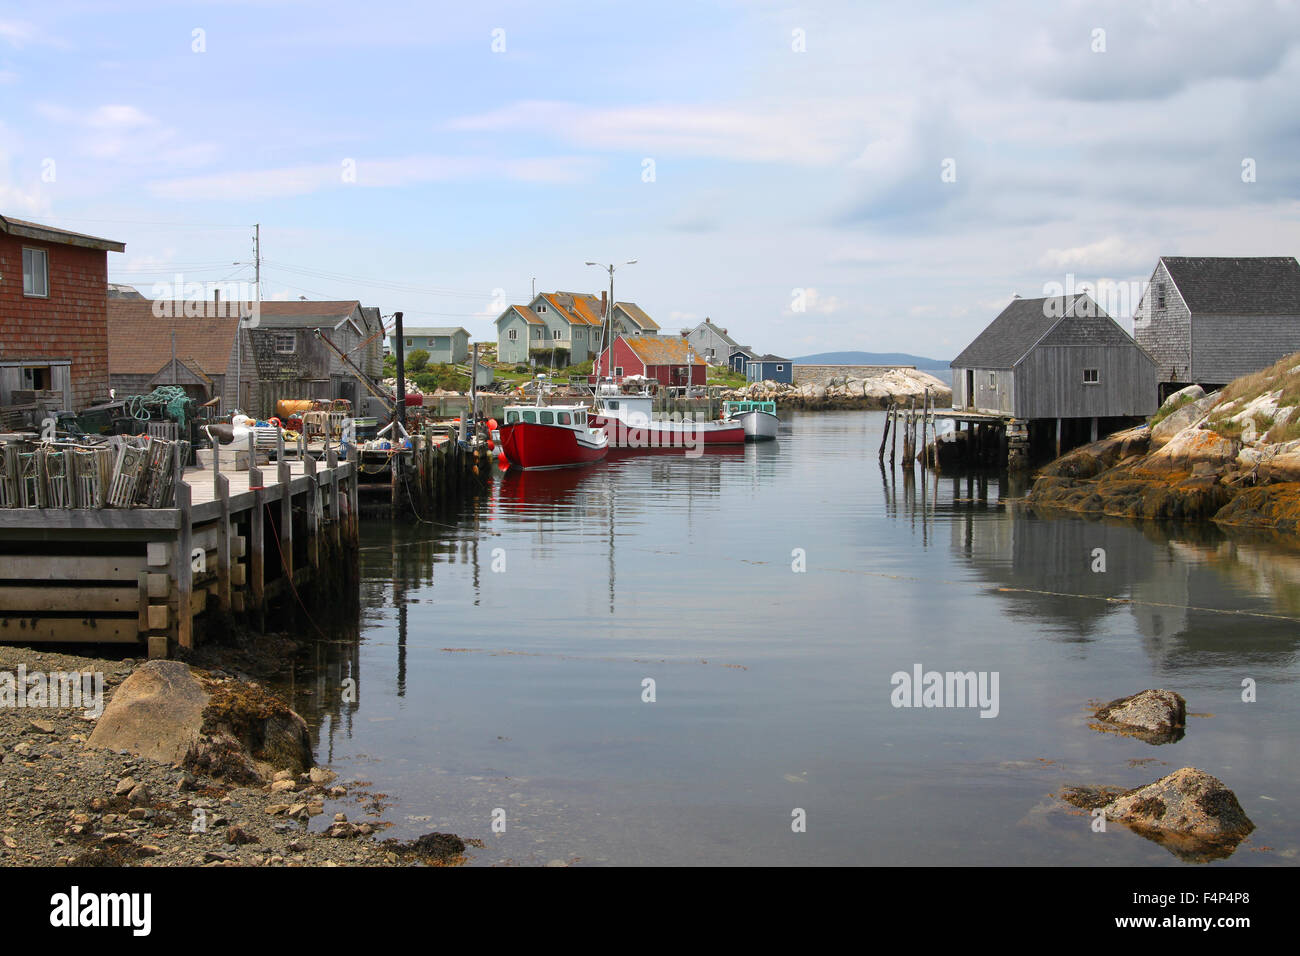 Villaggio costiero di Peggys Cove, Nova Scotia, Canada, mostra mare baracche, barche da pesca e case lungo la costa Foto Stock